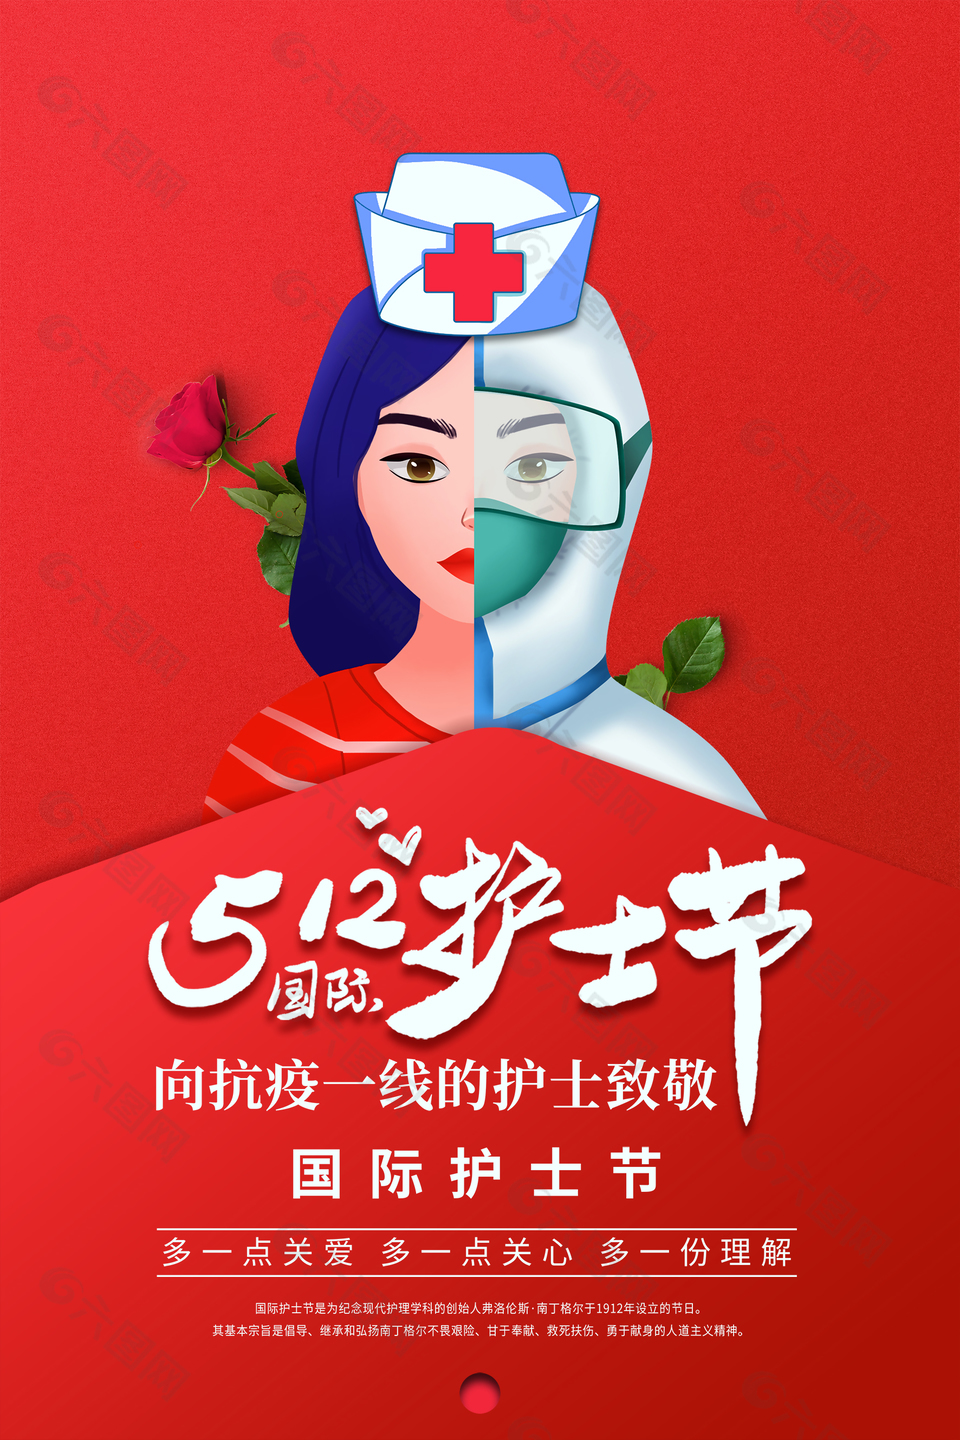 国际护士节节日宣传海报